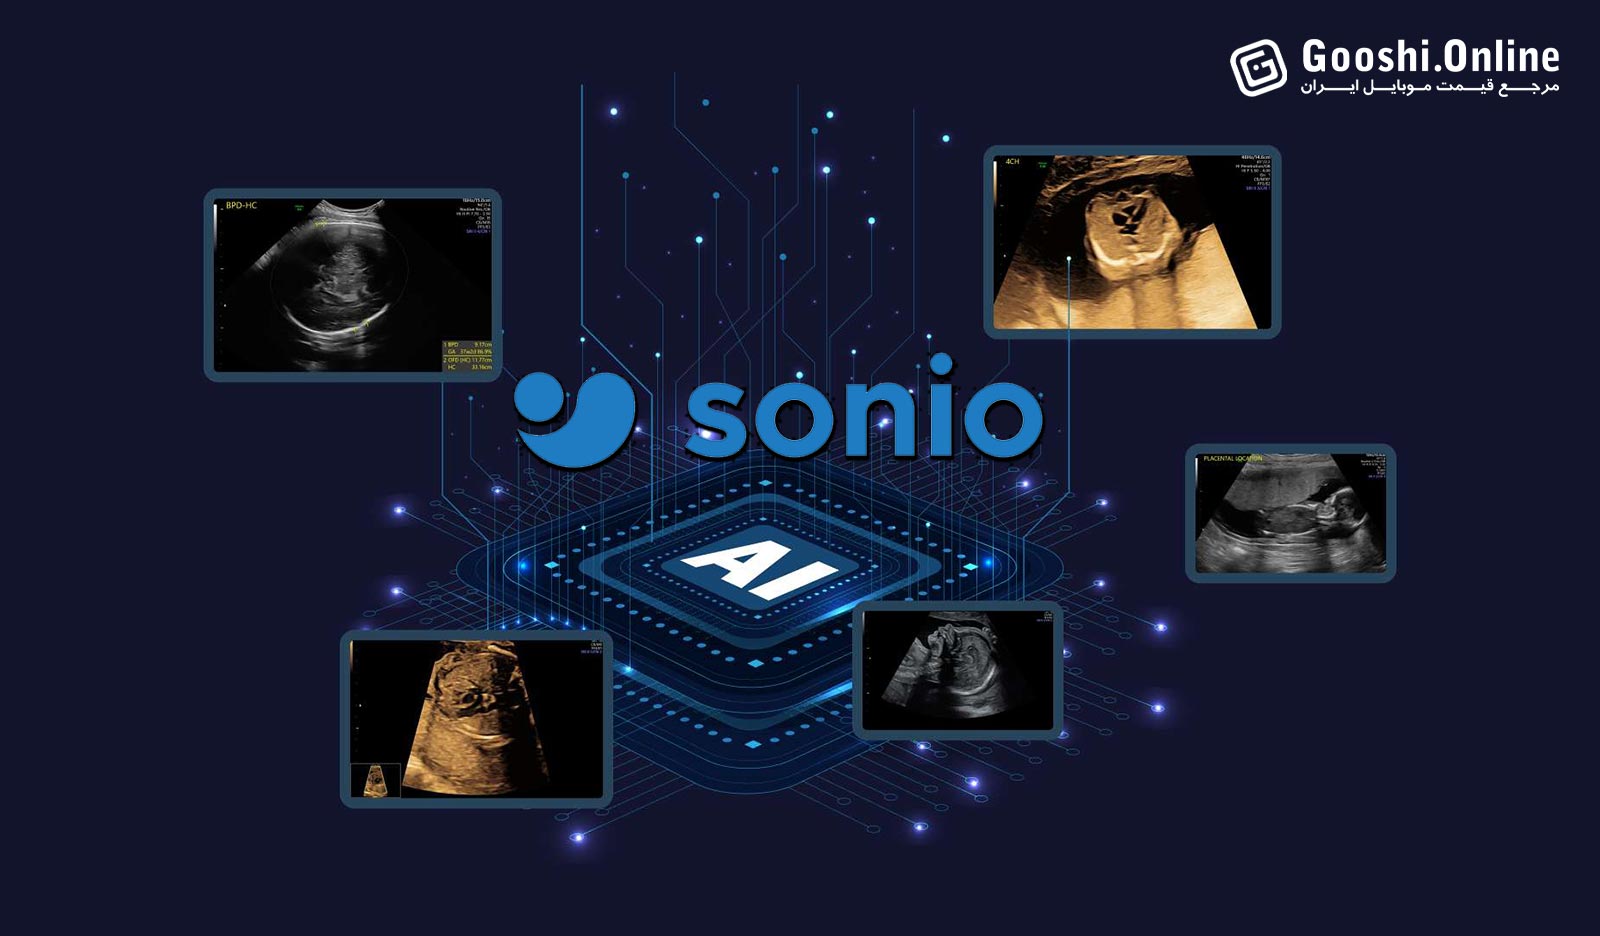 سامسونگ با خرید Sonio به دنیای هوش مصنوعی پزشکی قدم گذاشت